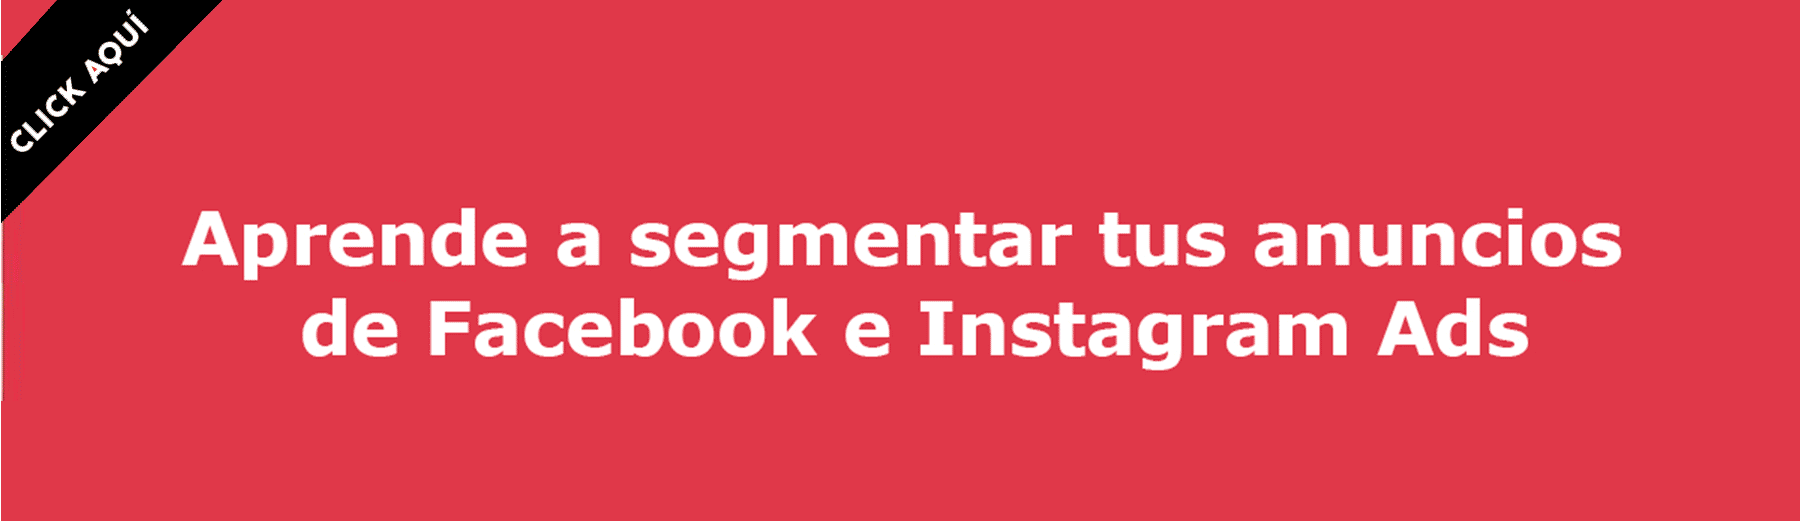 segmentar-anuncios-facebook-instagram